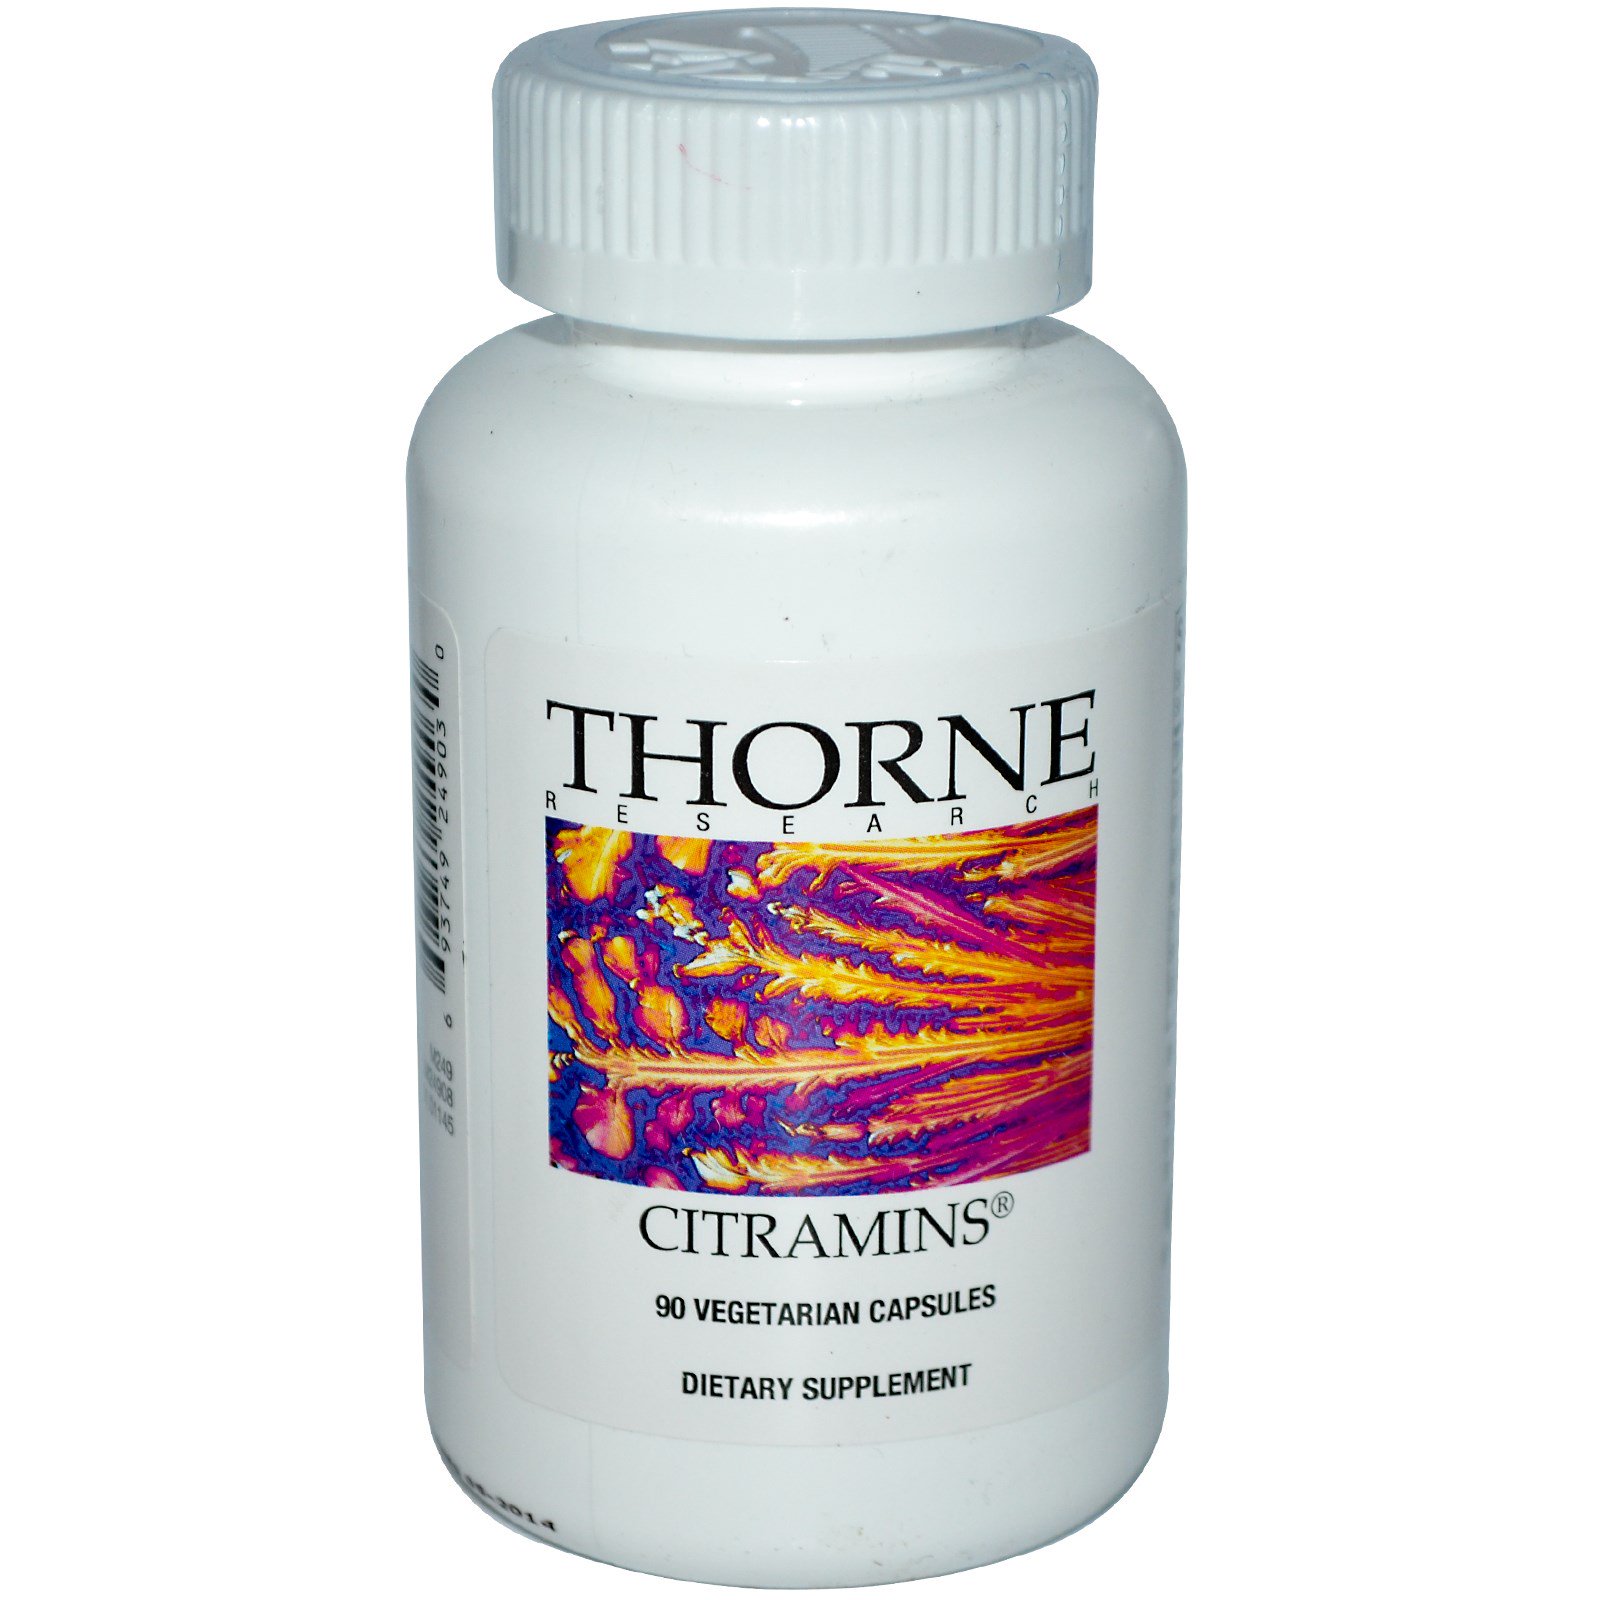 Железо на растительной основе. Thorne Calcium. Н-ацетилцистеин,Торне Ресерч 90 капсул. Цитрамин витамины и минералы. Цитрат калия Thorne.